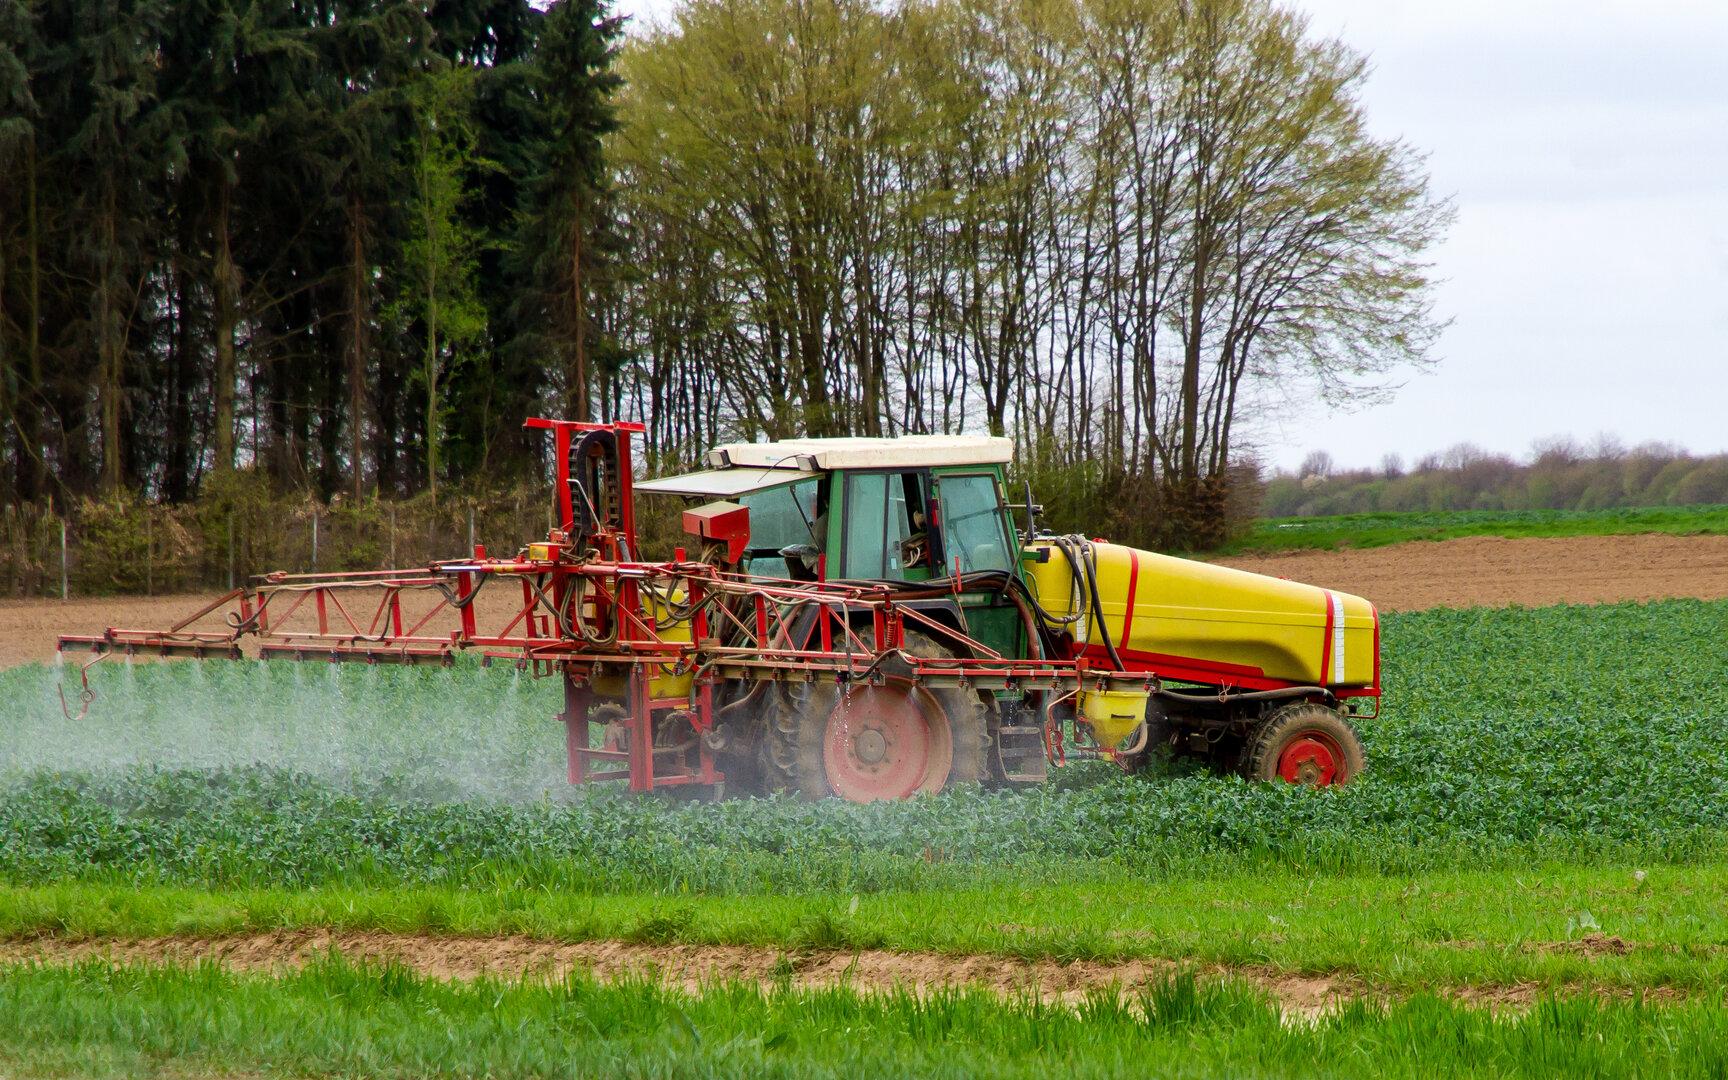 Pestizide in Deponie entsorgt: Gemeinde bekommt Schadenersatz